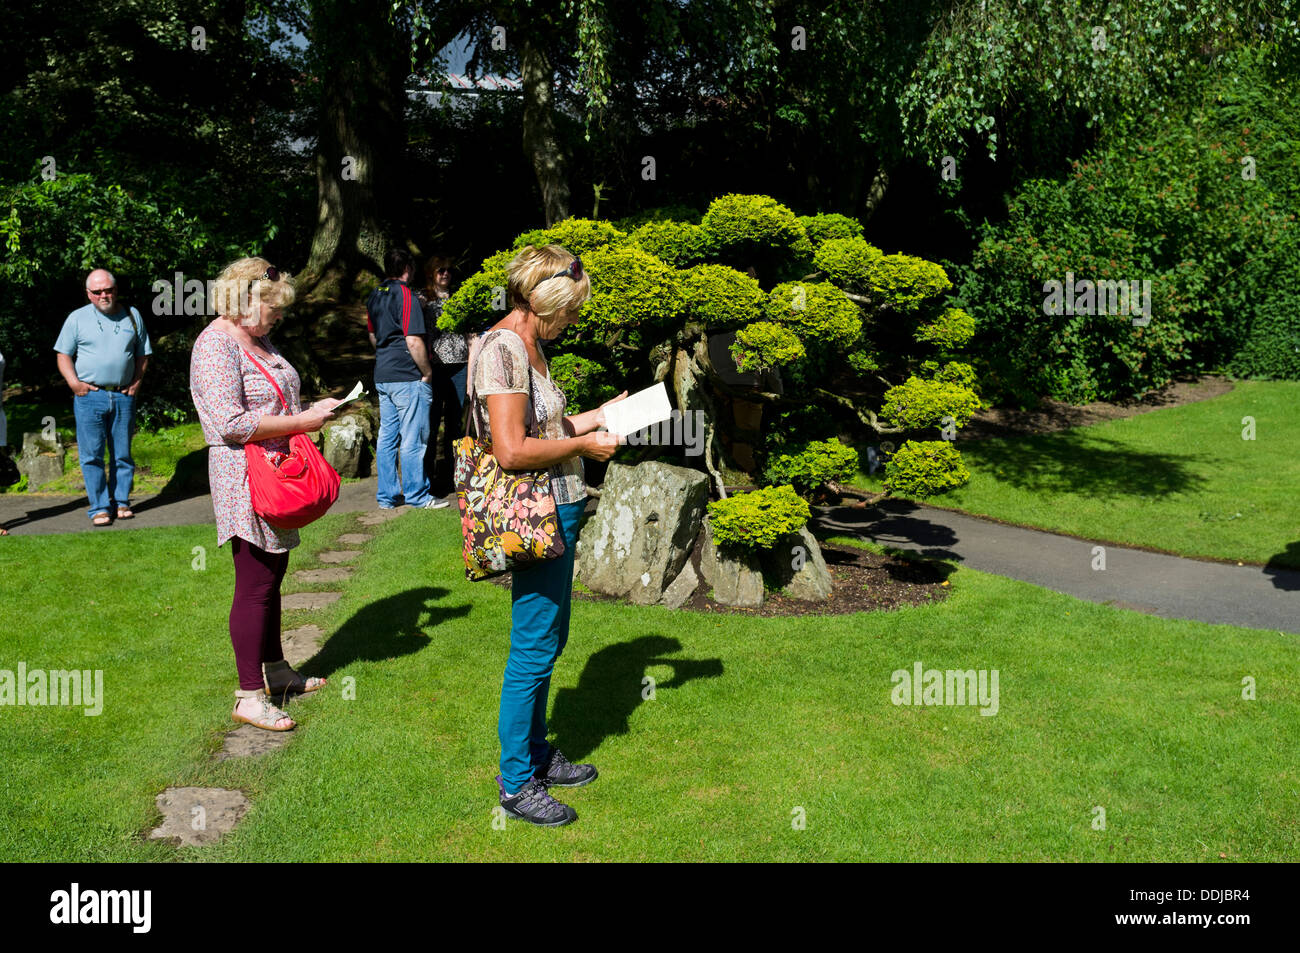 Touristen finden Sie einen Reiseführer in den japanischen Gärten, Kildare. Chamaecyparis Obtusa, Aurea Baum neben ihnen. Irland. Stockfoto